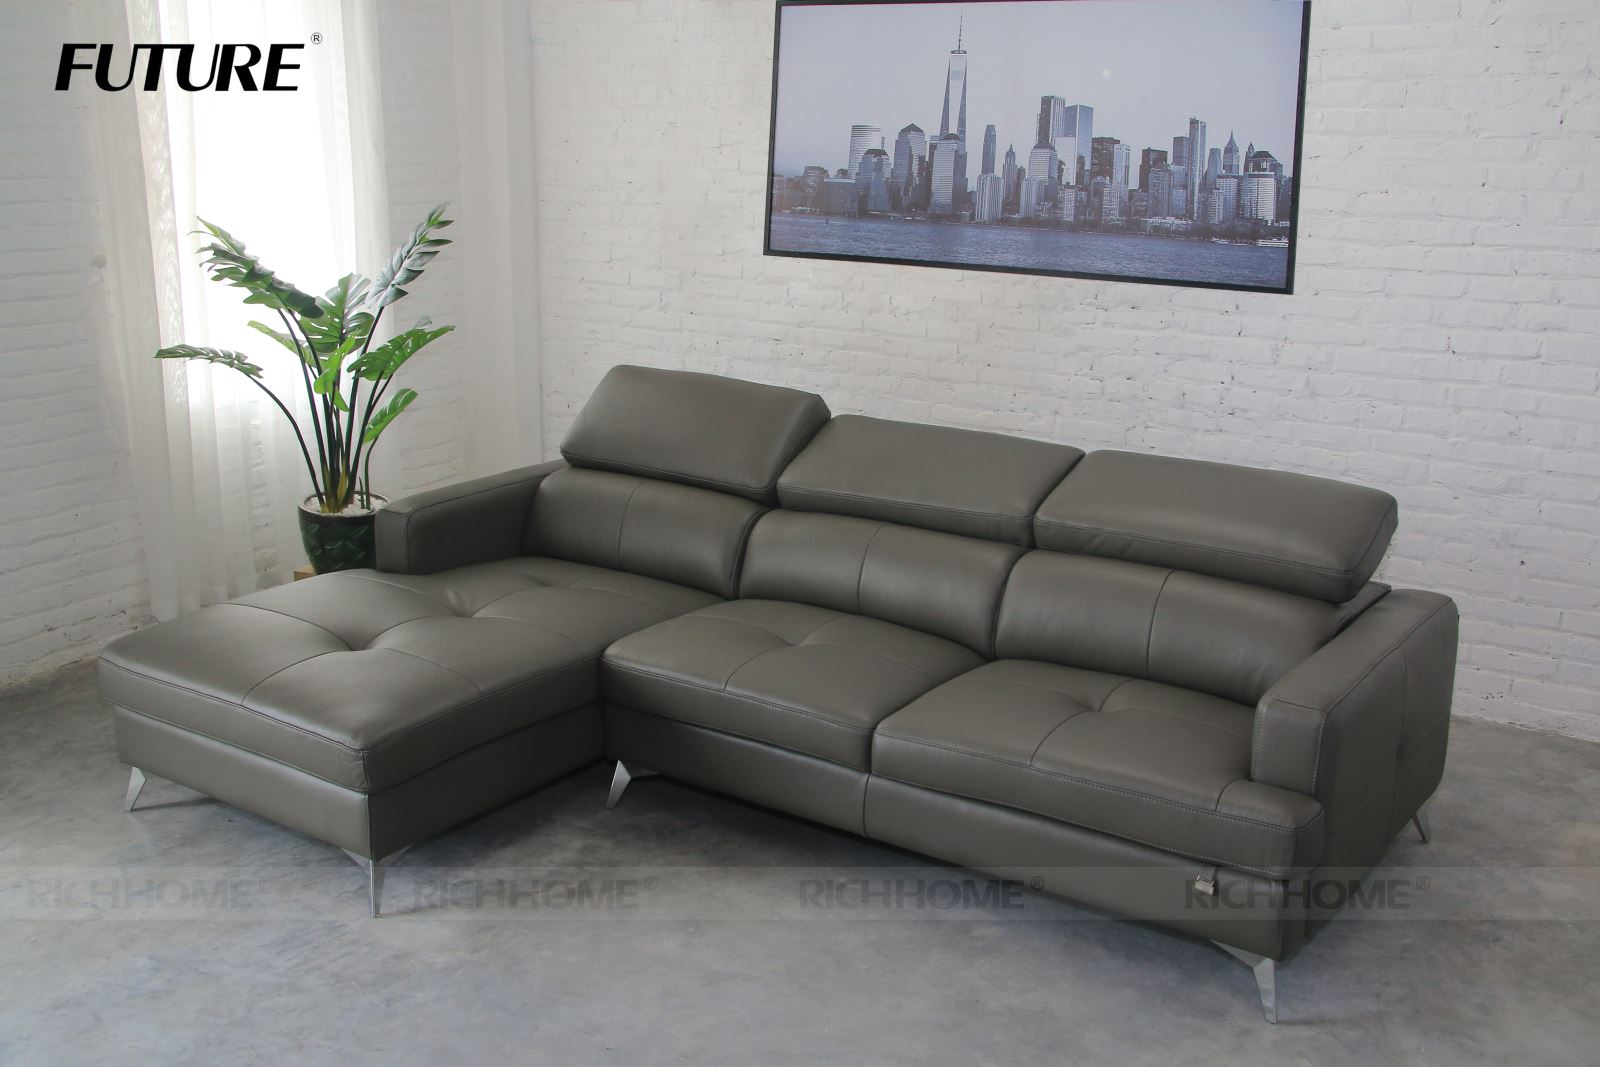 Tổng hợp các mẫu sofa nhập khẩu với nhiều kiểu dáng khác nhau - Ảnh 12